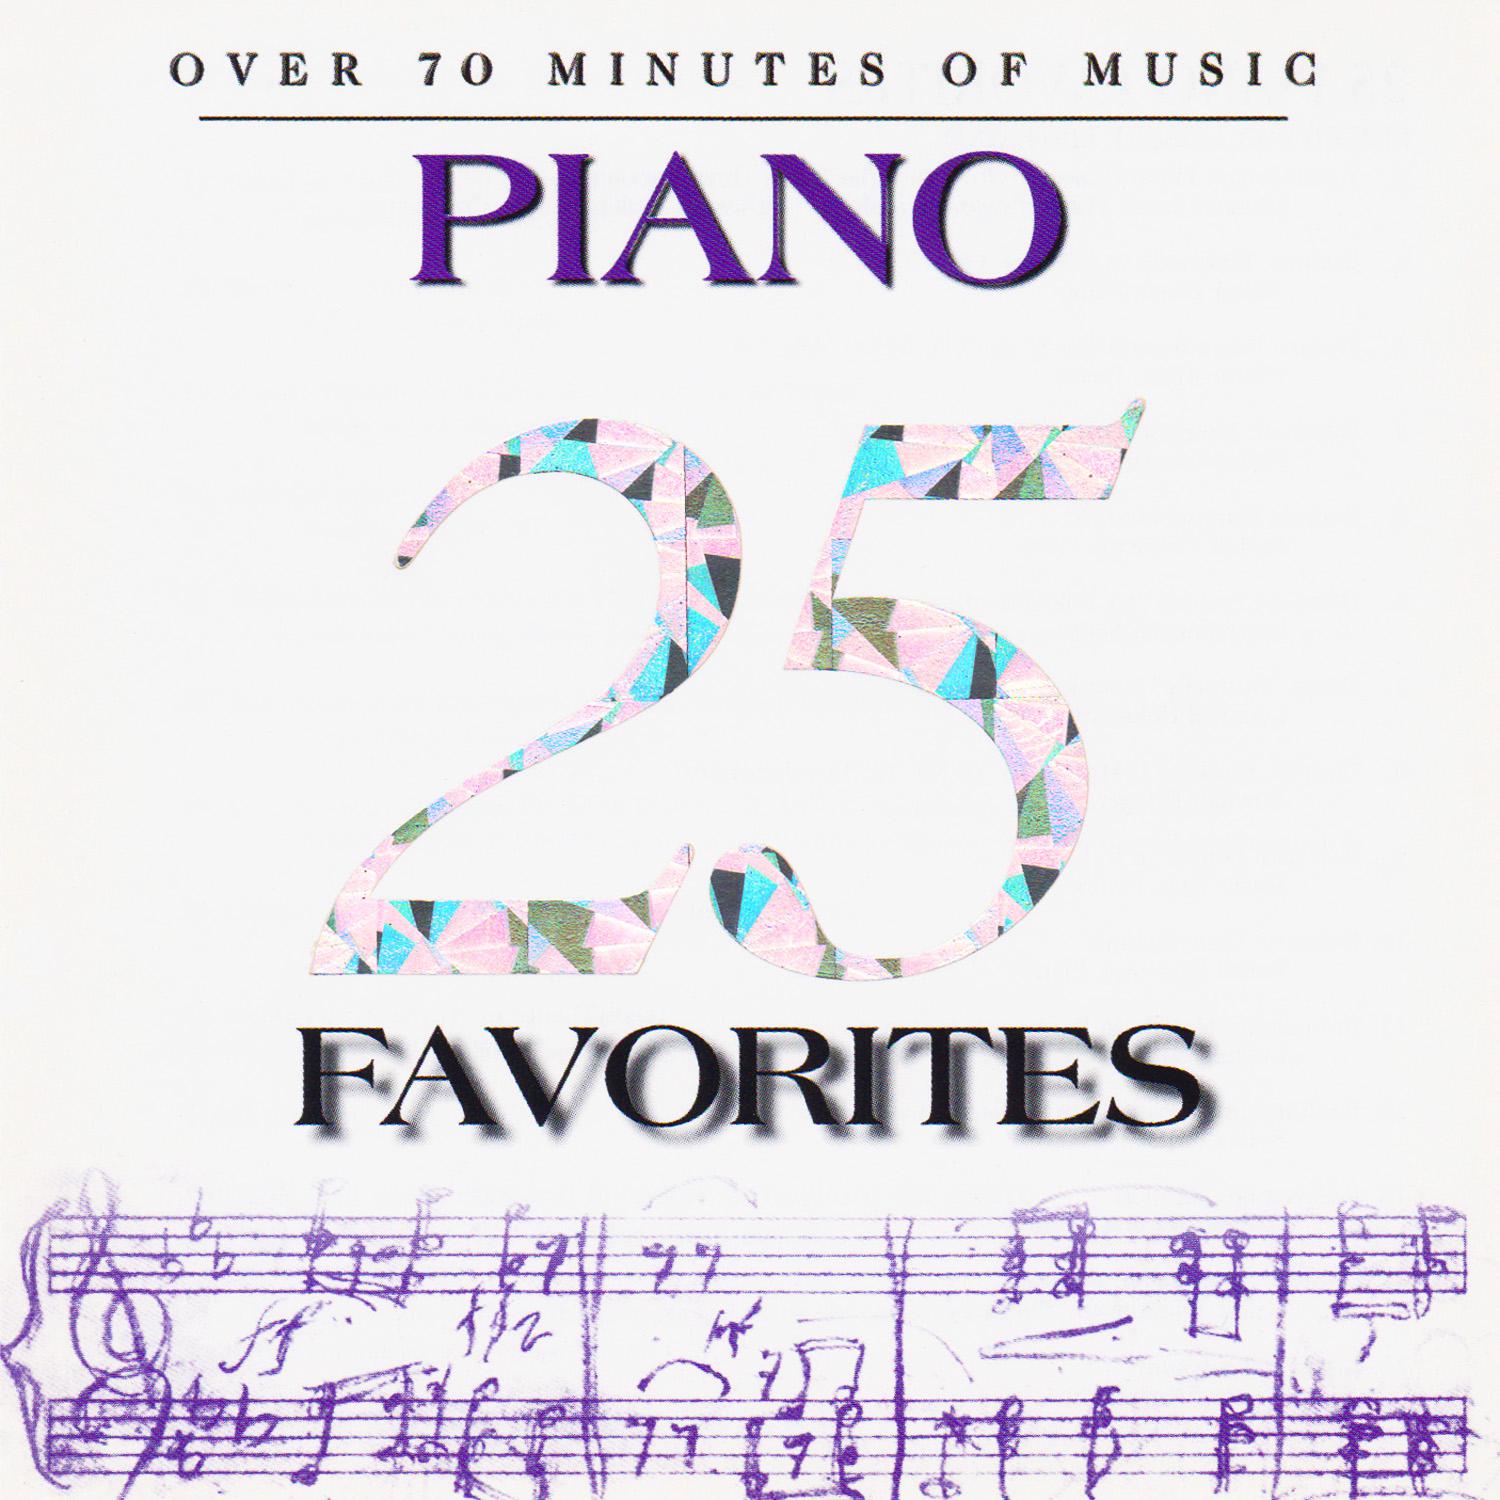 Guiomar Novaes - Waltz in D-Flat Major, Op. 64, No. 1 